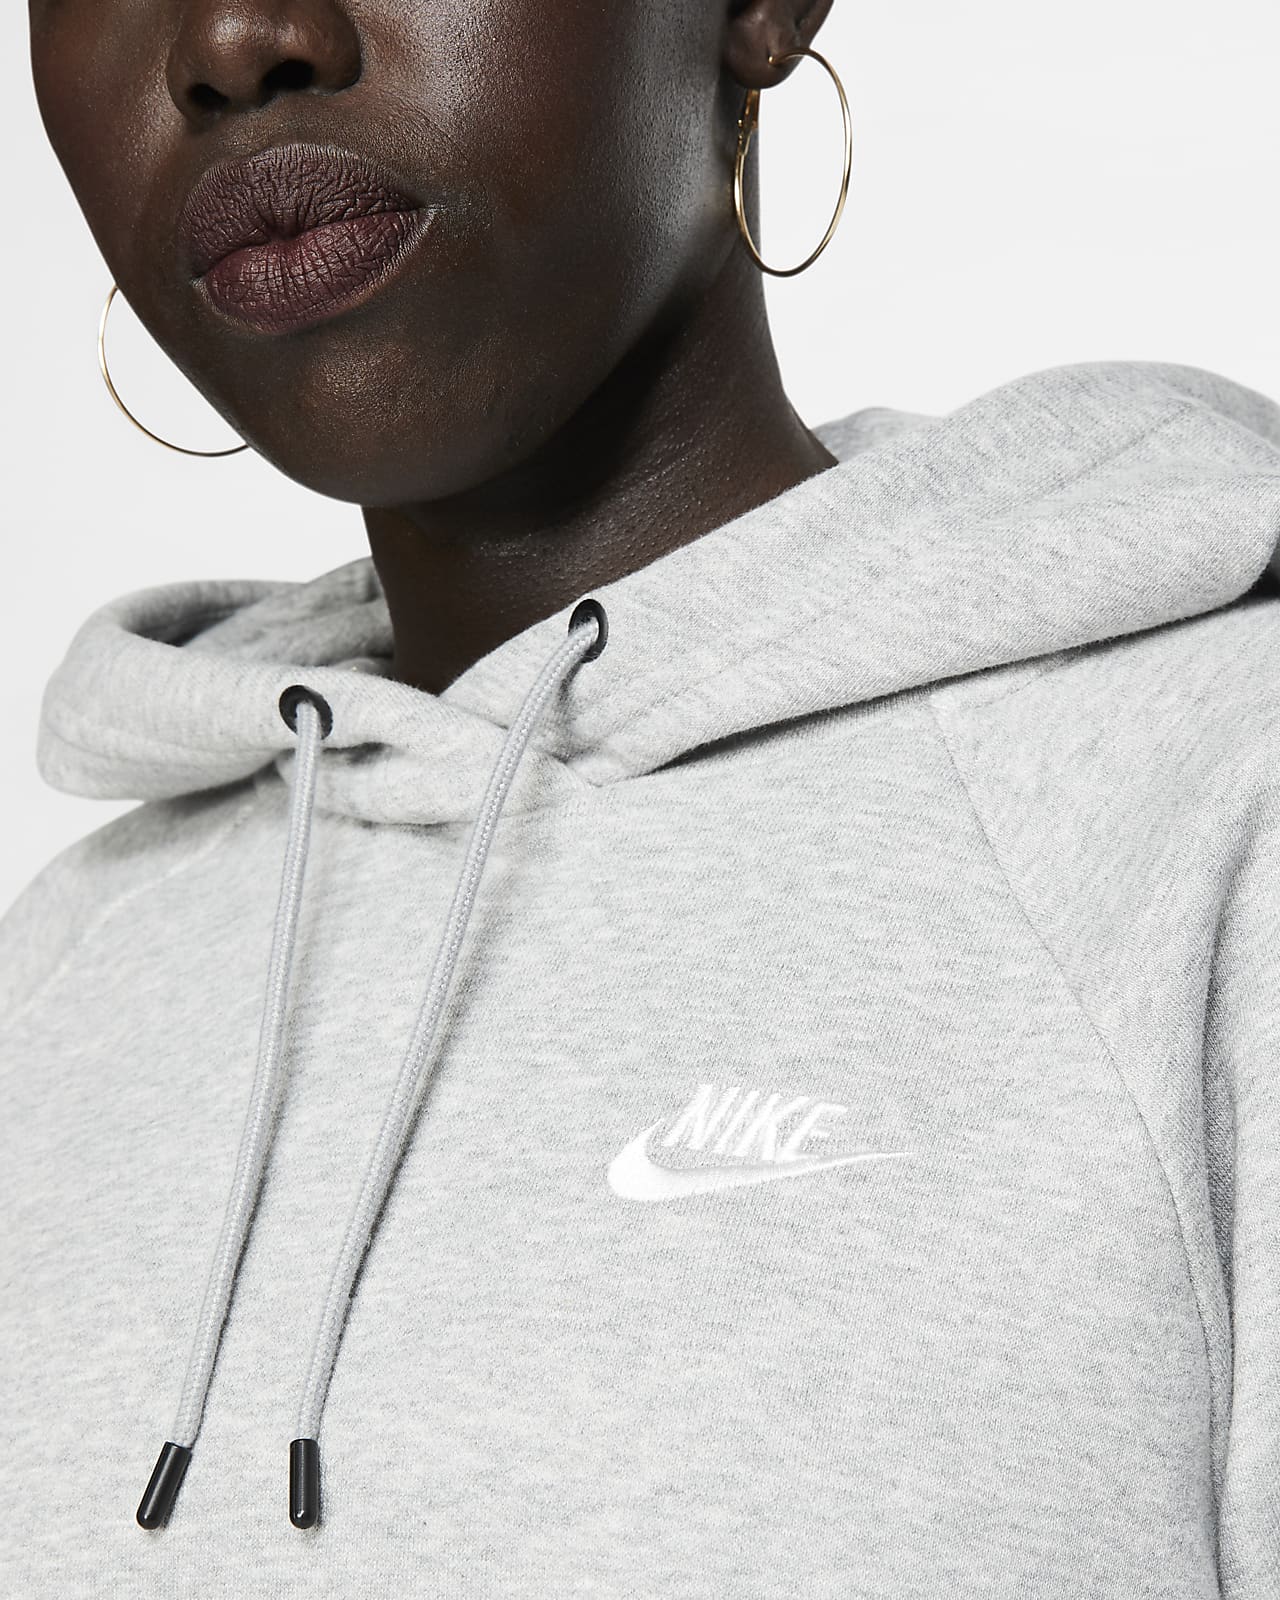 women's nike sportswear essential fleece hoodie